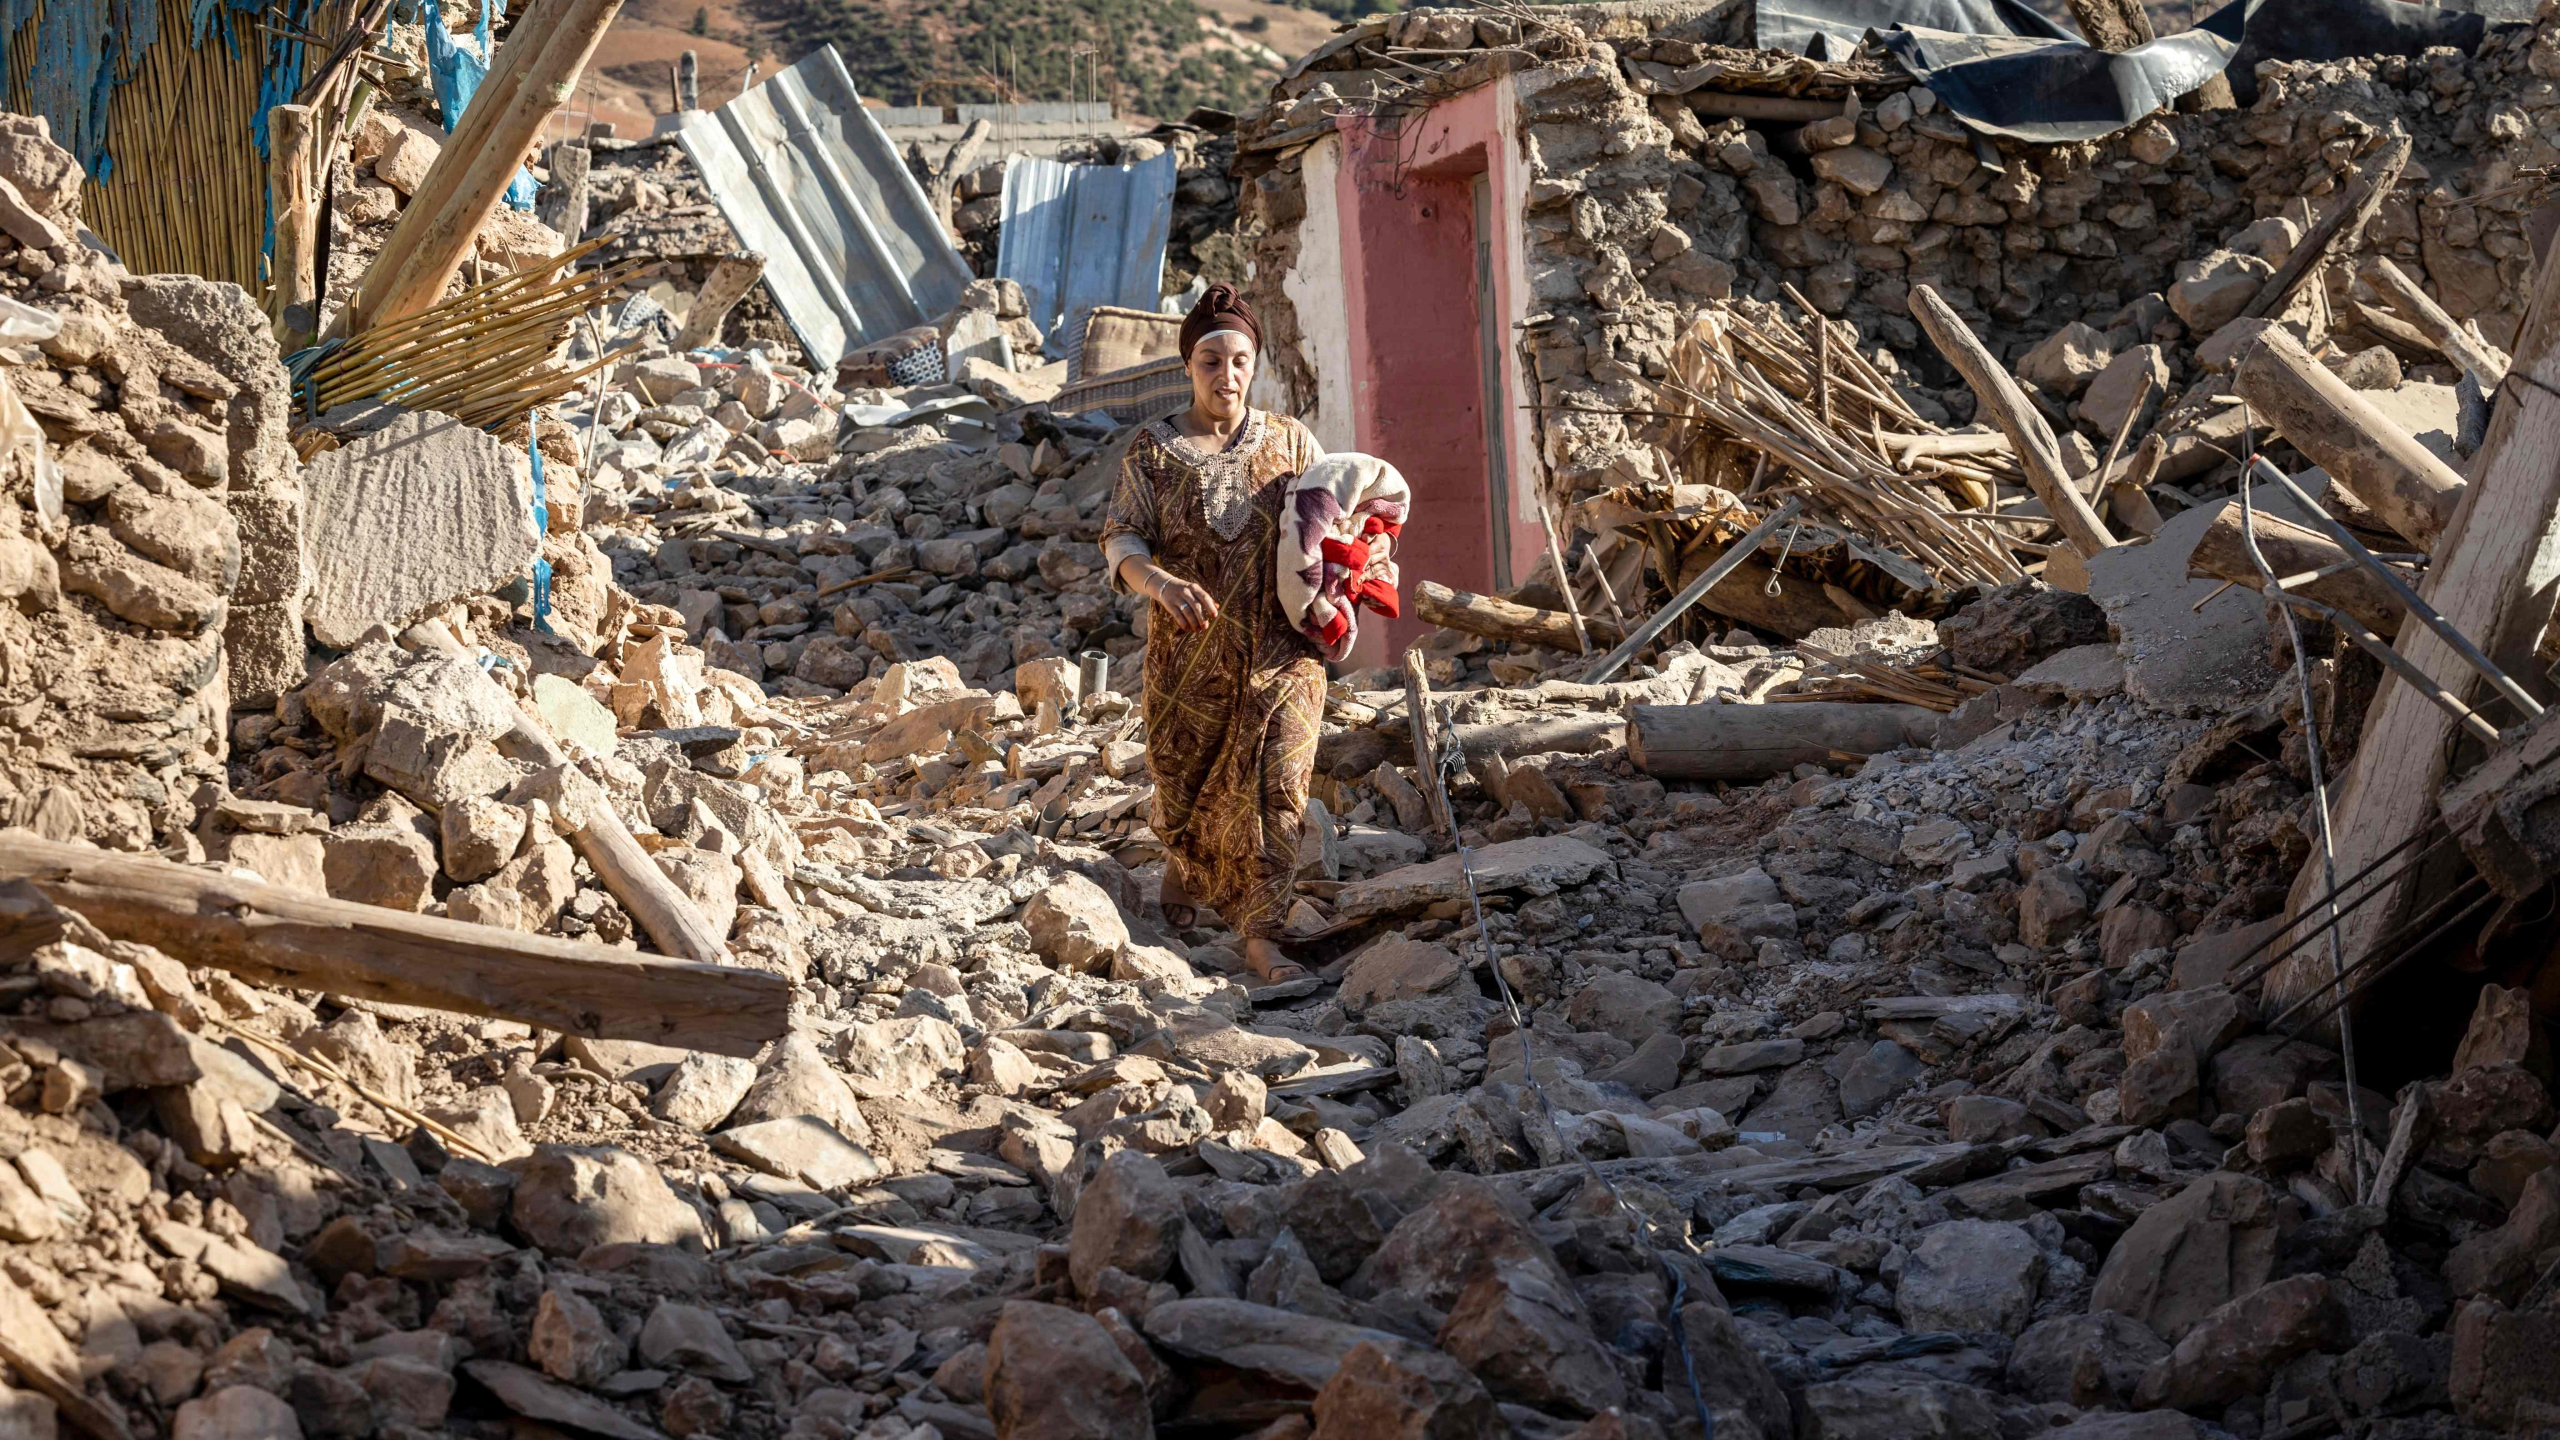 “زلزال الحوز”.. ضعف تنسيق الجمعيات والسلطات يخلق عدم توازن في توزيع المساعدات